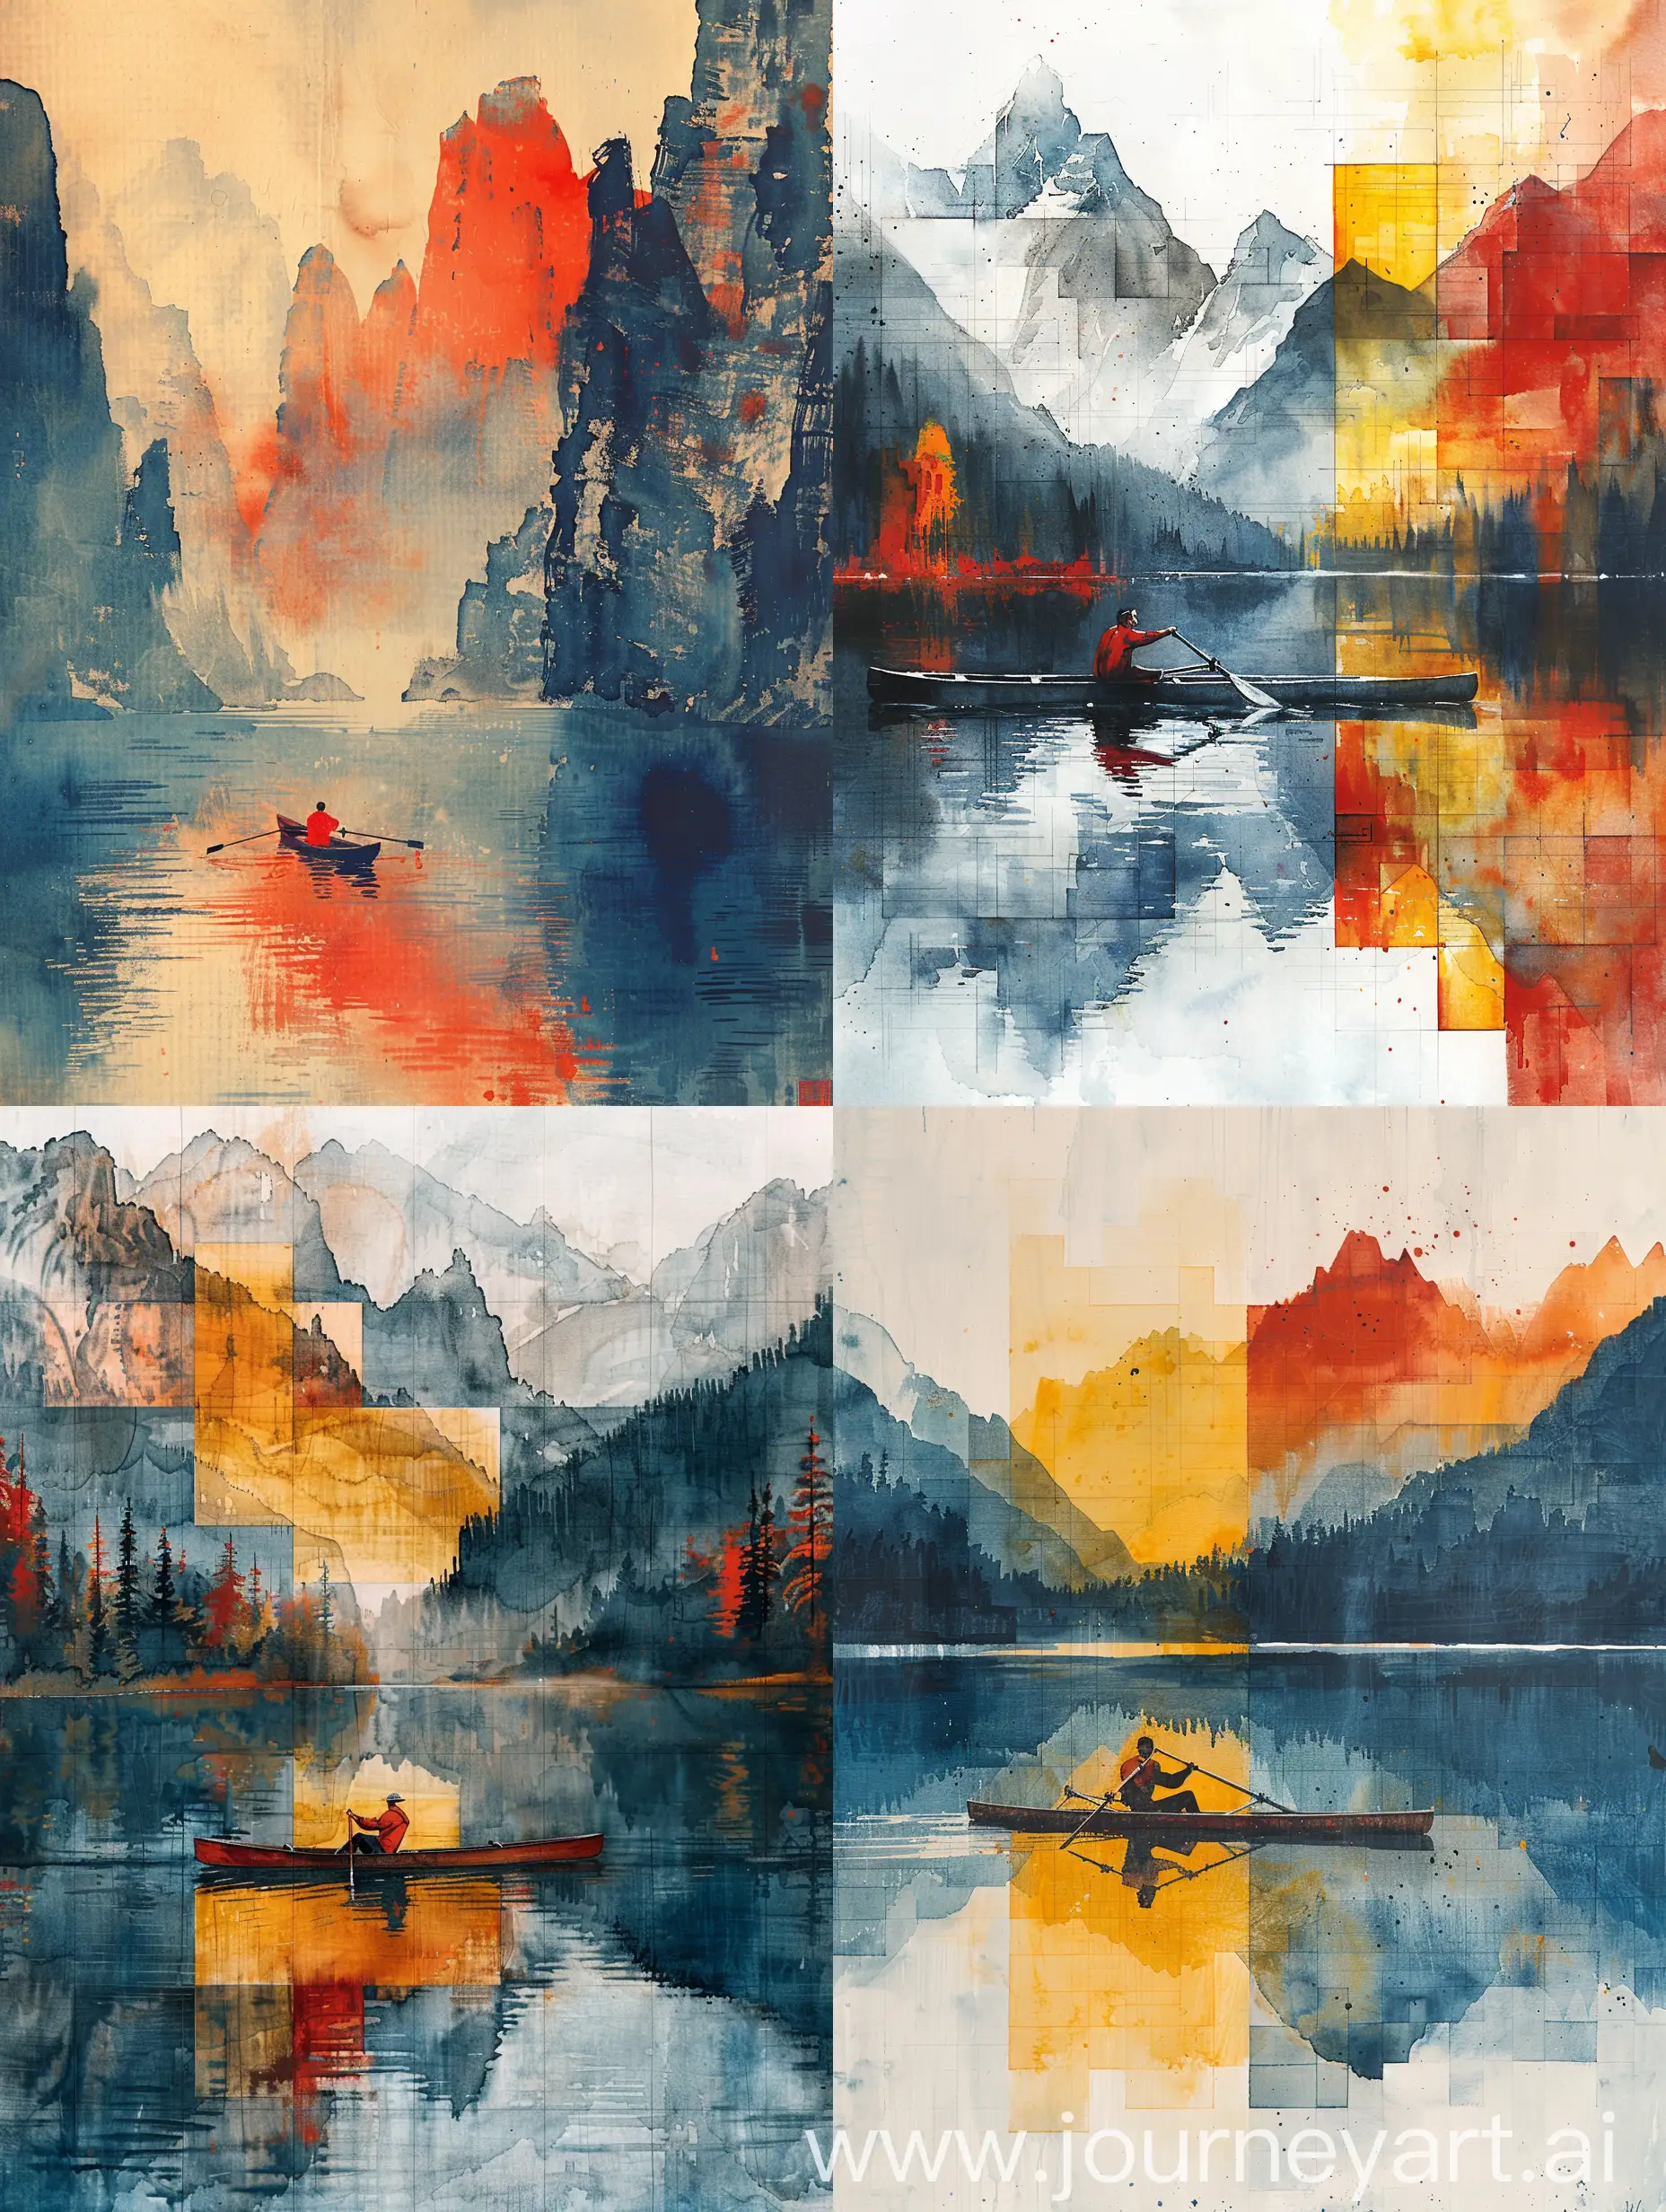 Mountain-River-Rowing-Wu-Guanzhong-and-Piet-Mondrian-Style-Watercolor-Art